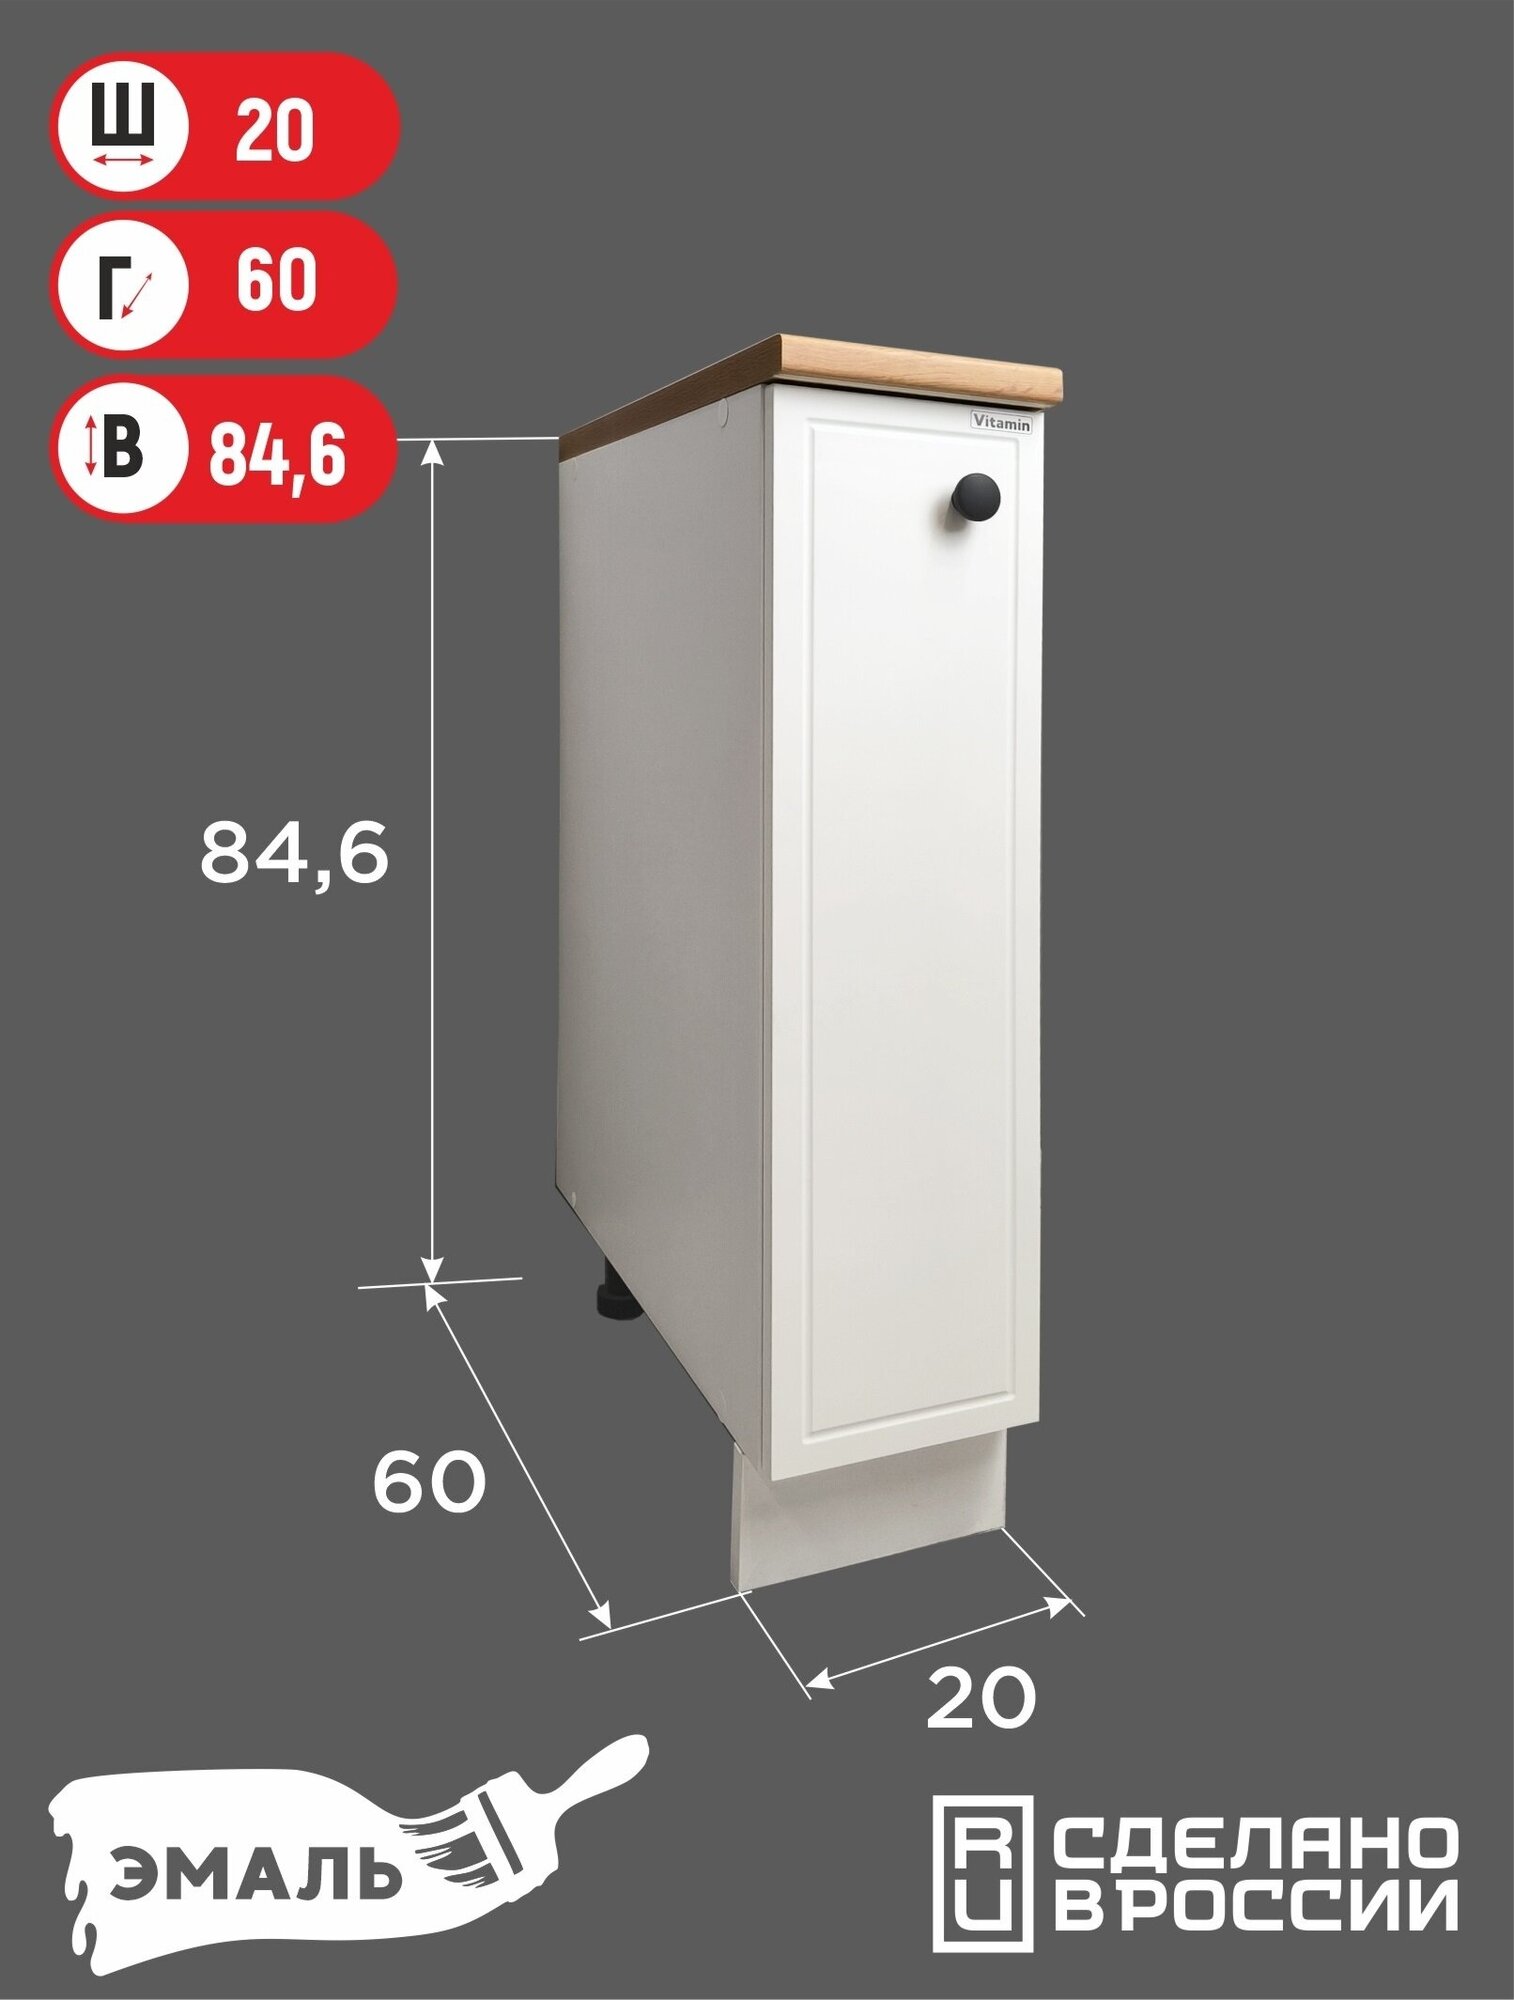 Модуль кухонный VITAMIN шкаф- стол ш.20 см , фасад МДФ, эмаль.